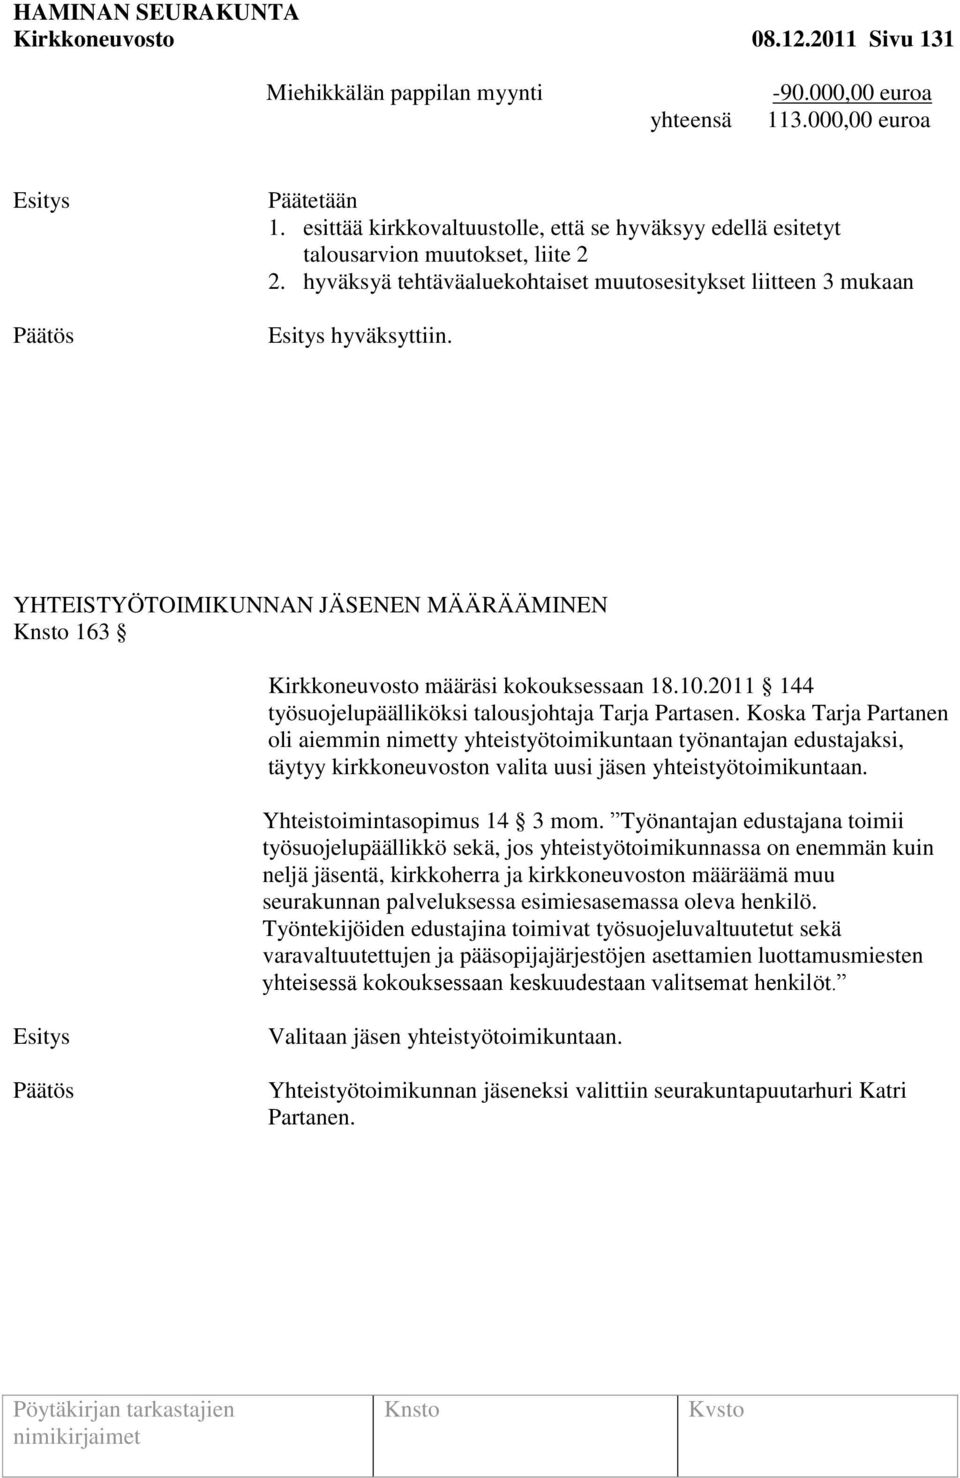 YHTEISTYÖTOIMIKUNNAN JÄSENEN MÄÄRÄÄMINEN 163 Kirkkoneuvosto määräsi kokouksessaan 18.10.2011 144 työsuojelupäälliköksi talousjohtaja Tarja Partasen.